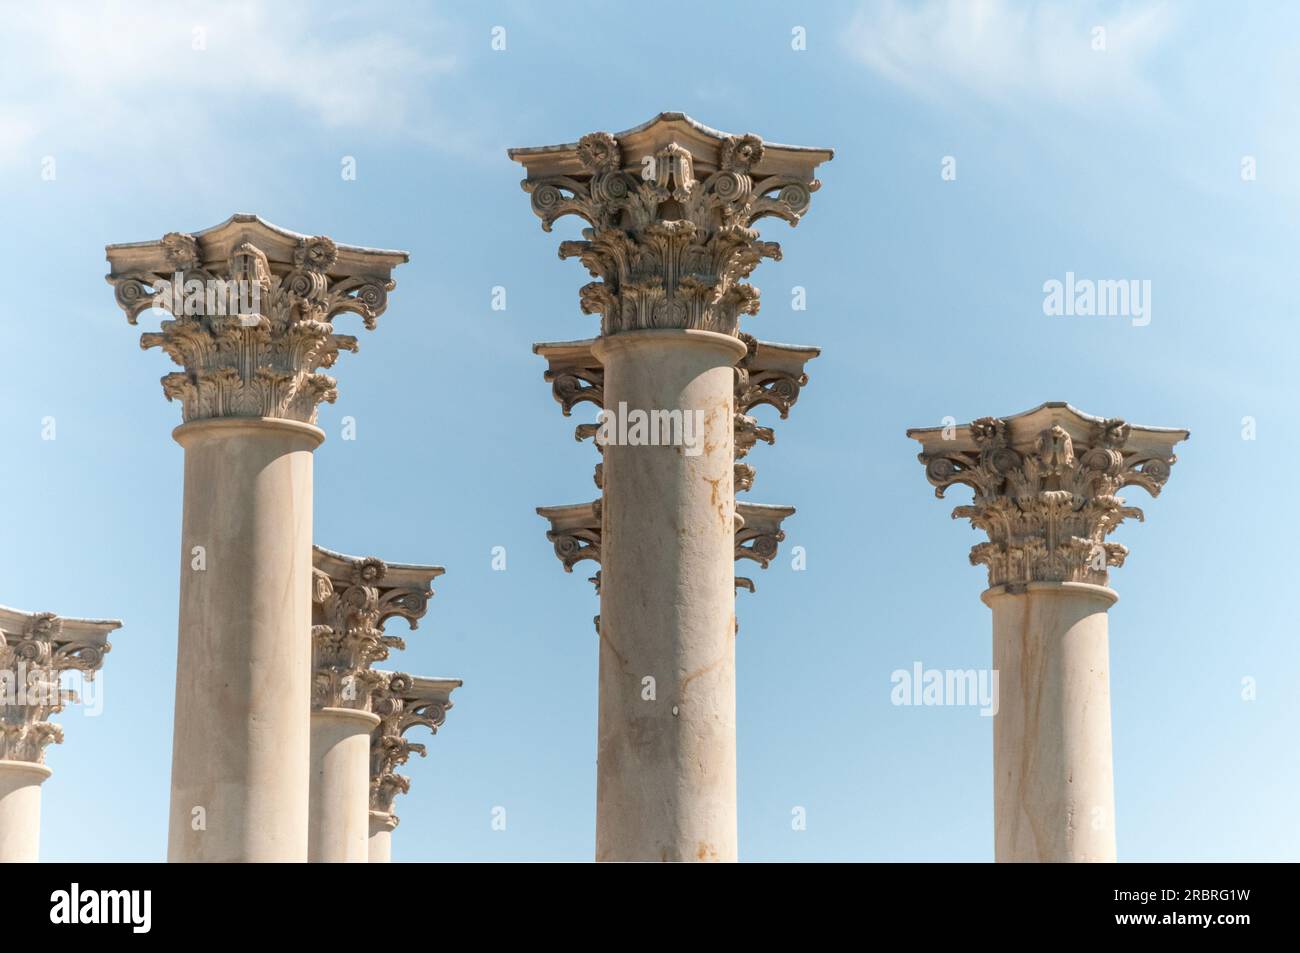 Columna decorativa foto de archivo. Imagen de capitolio - 12130550